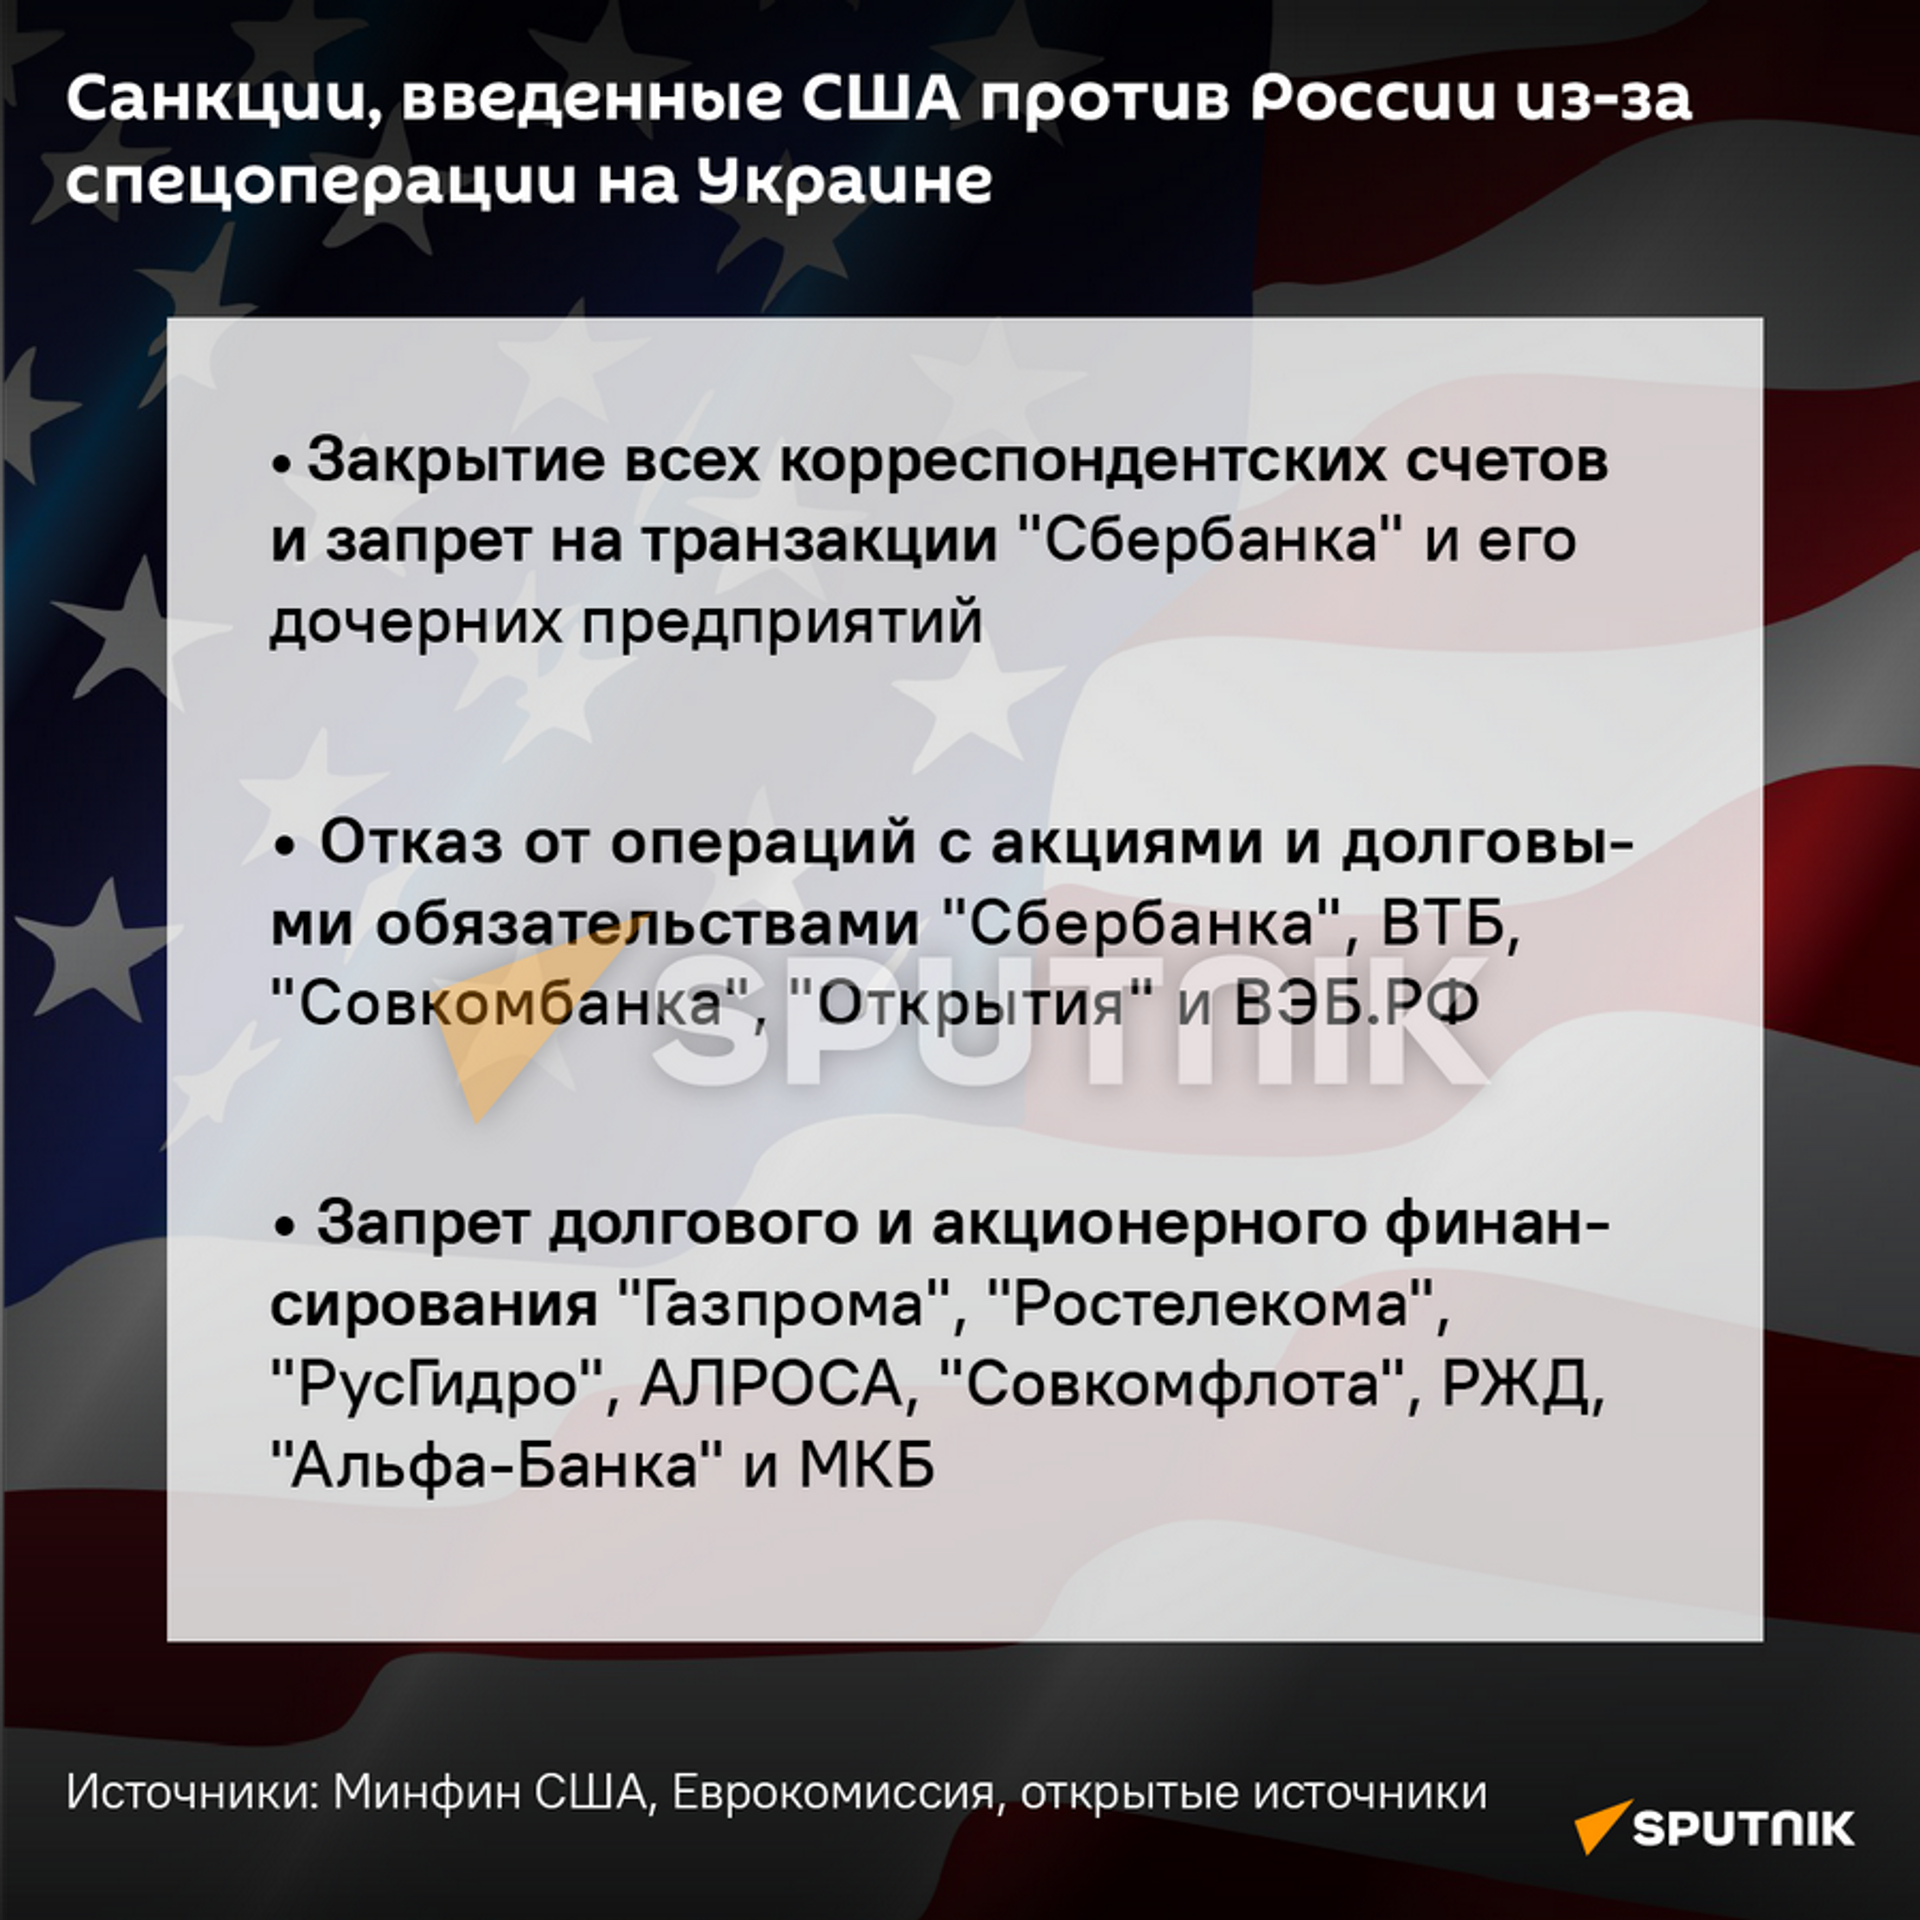 Санкции США в отношении России - Sputnik Беларусь, 1920, 26.02.2022